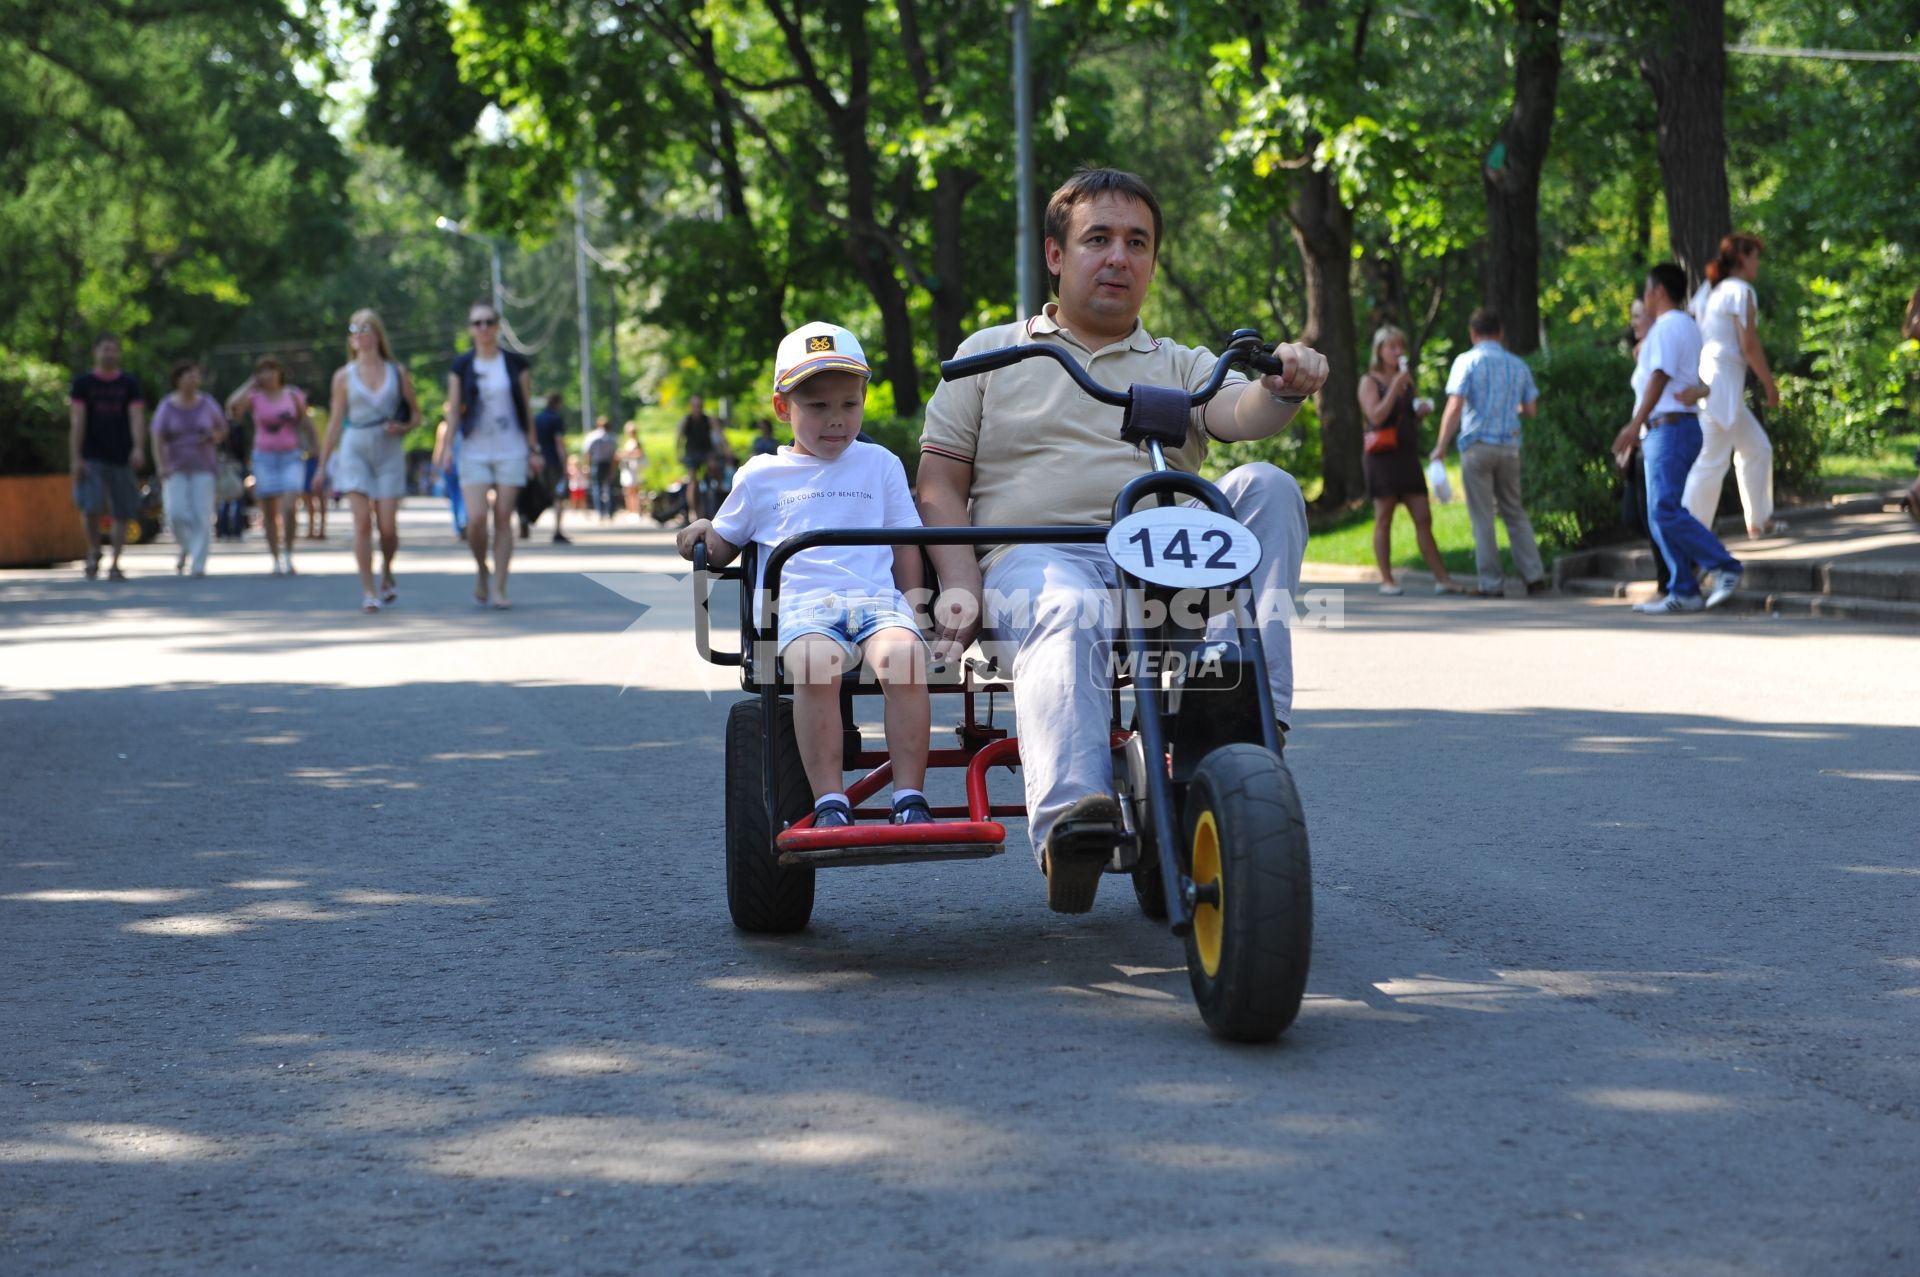 Парк `Сокольники`. На снимке: мужчина с ребенком катаются на велосипеде по парку.